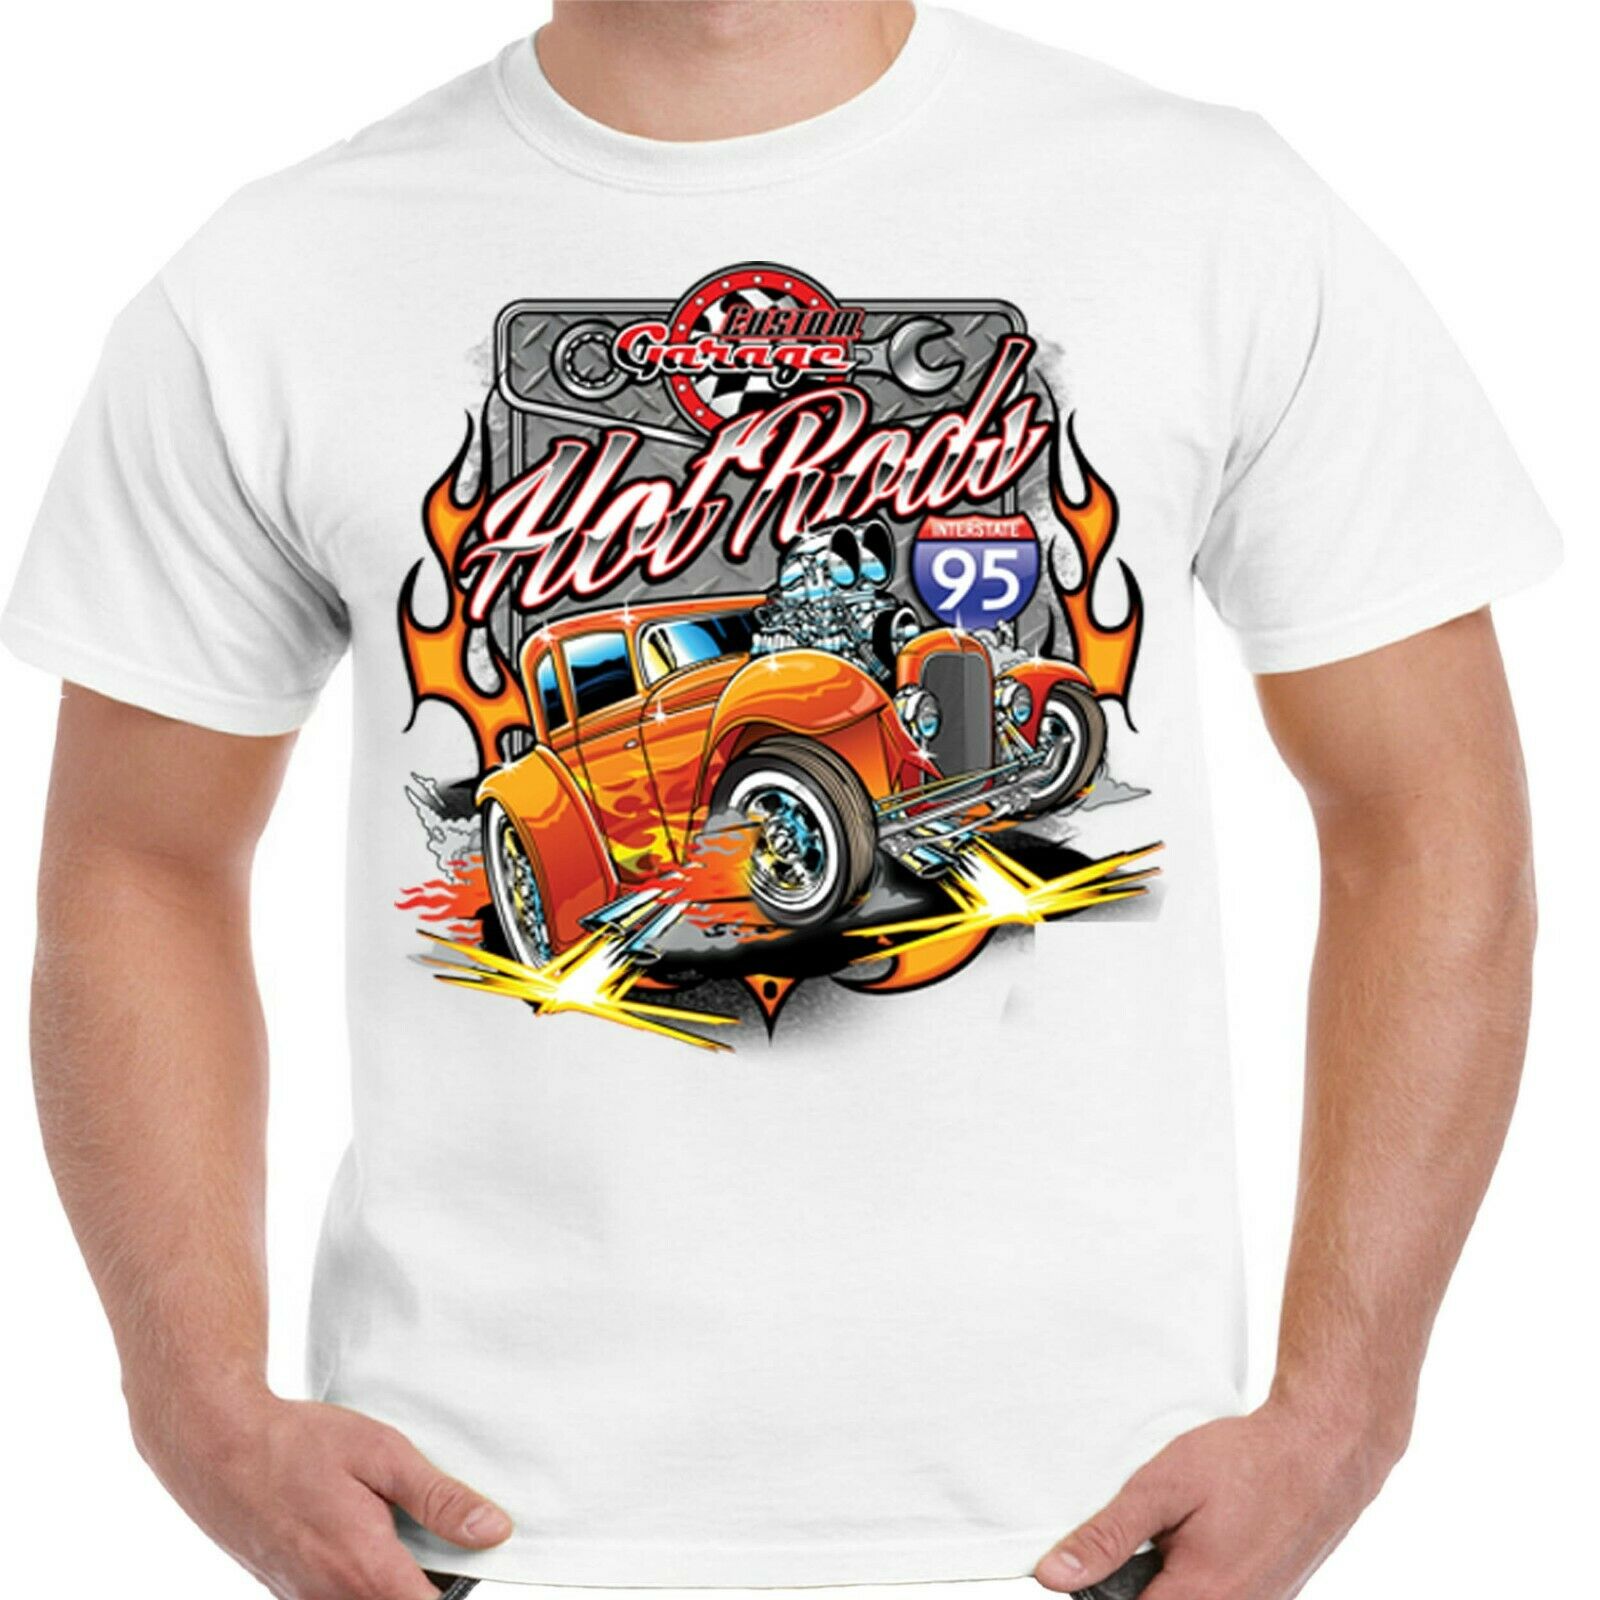 Homme Hotrod 58 Hot Rod T-shirt à manches longues American Classic Vintage Mopar Voiture 18